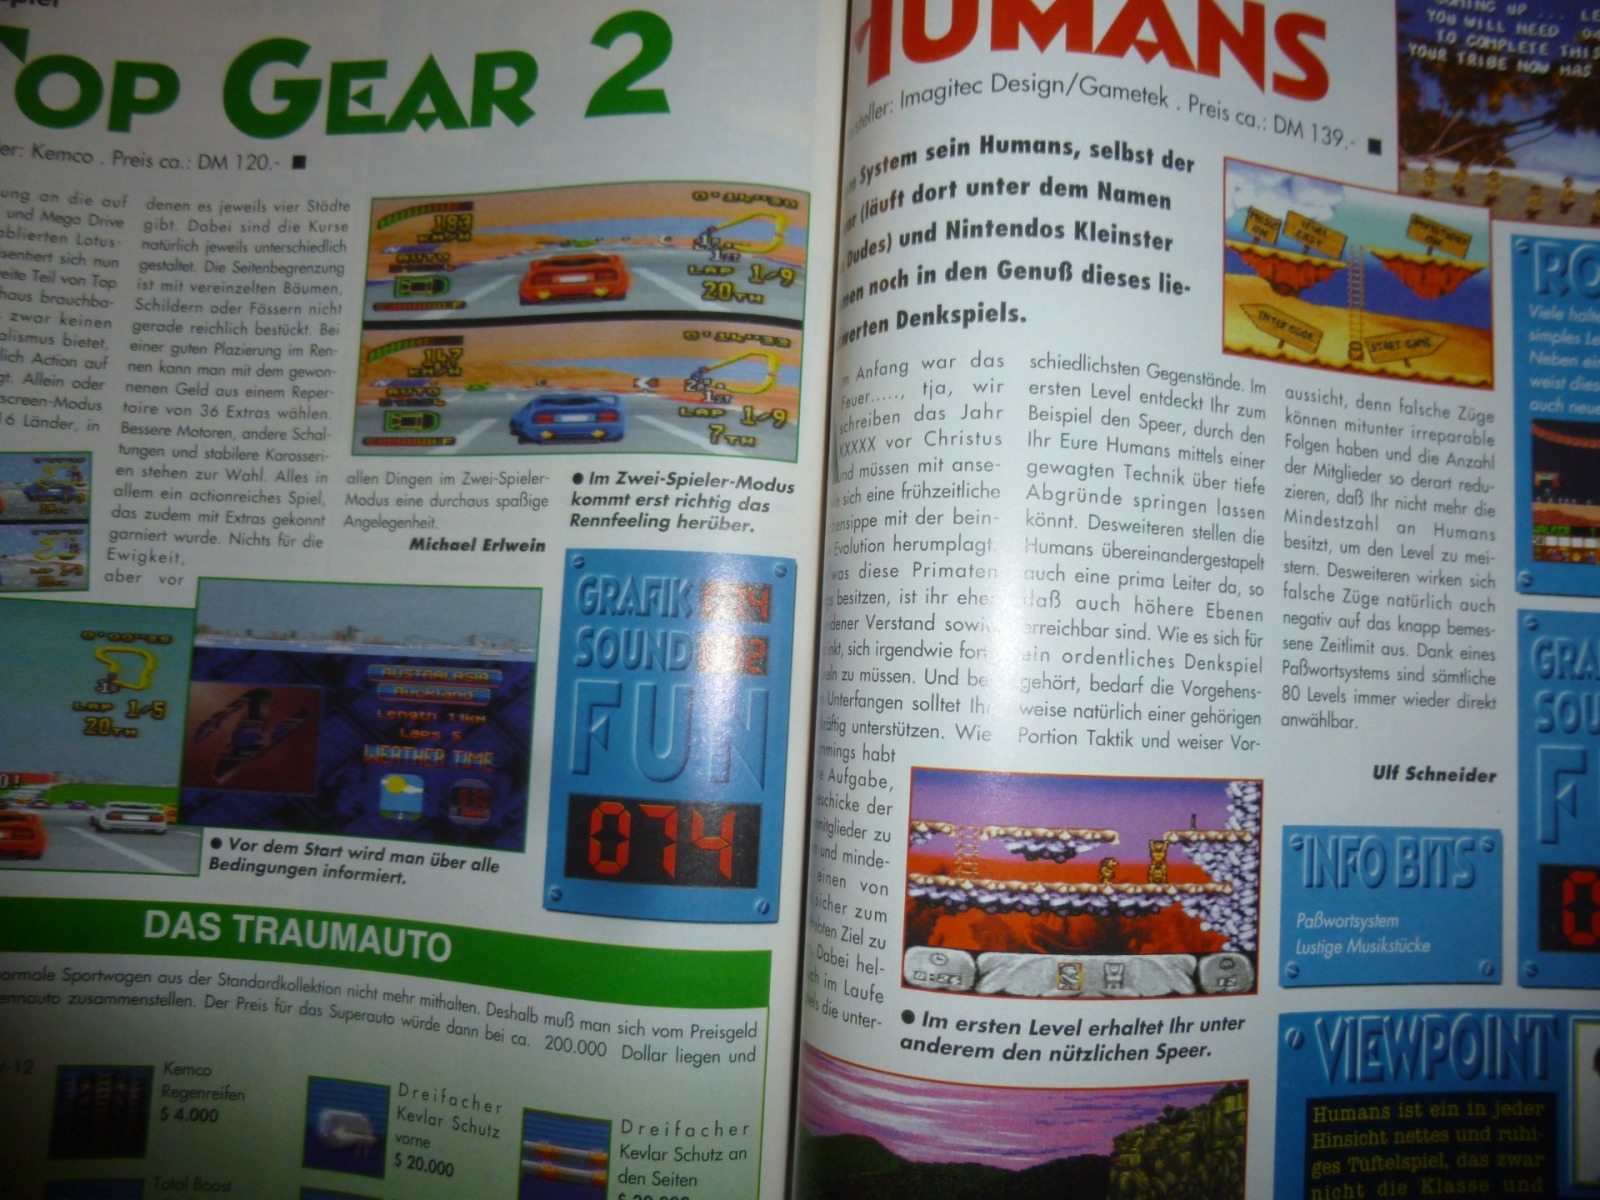 Play Time - Das Computer- und Videospiele-Magazin - Ausgabe 4/94 1994 32